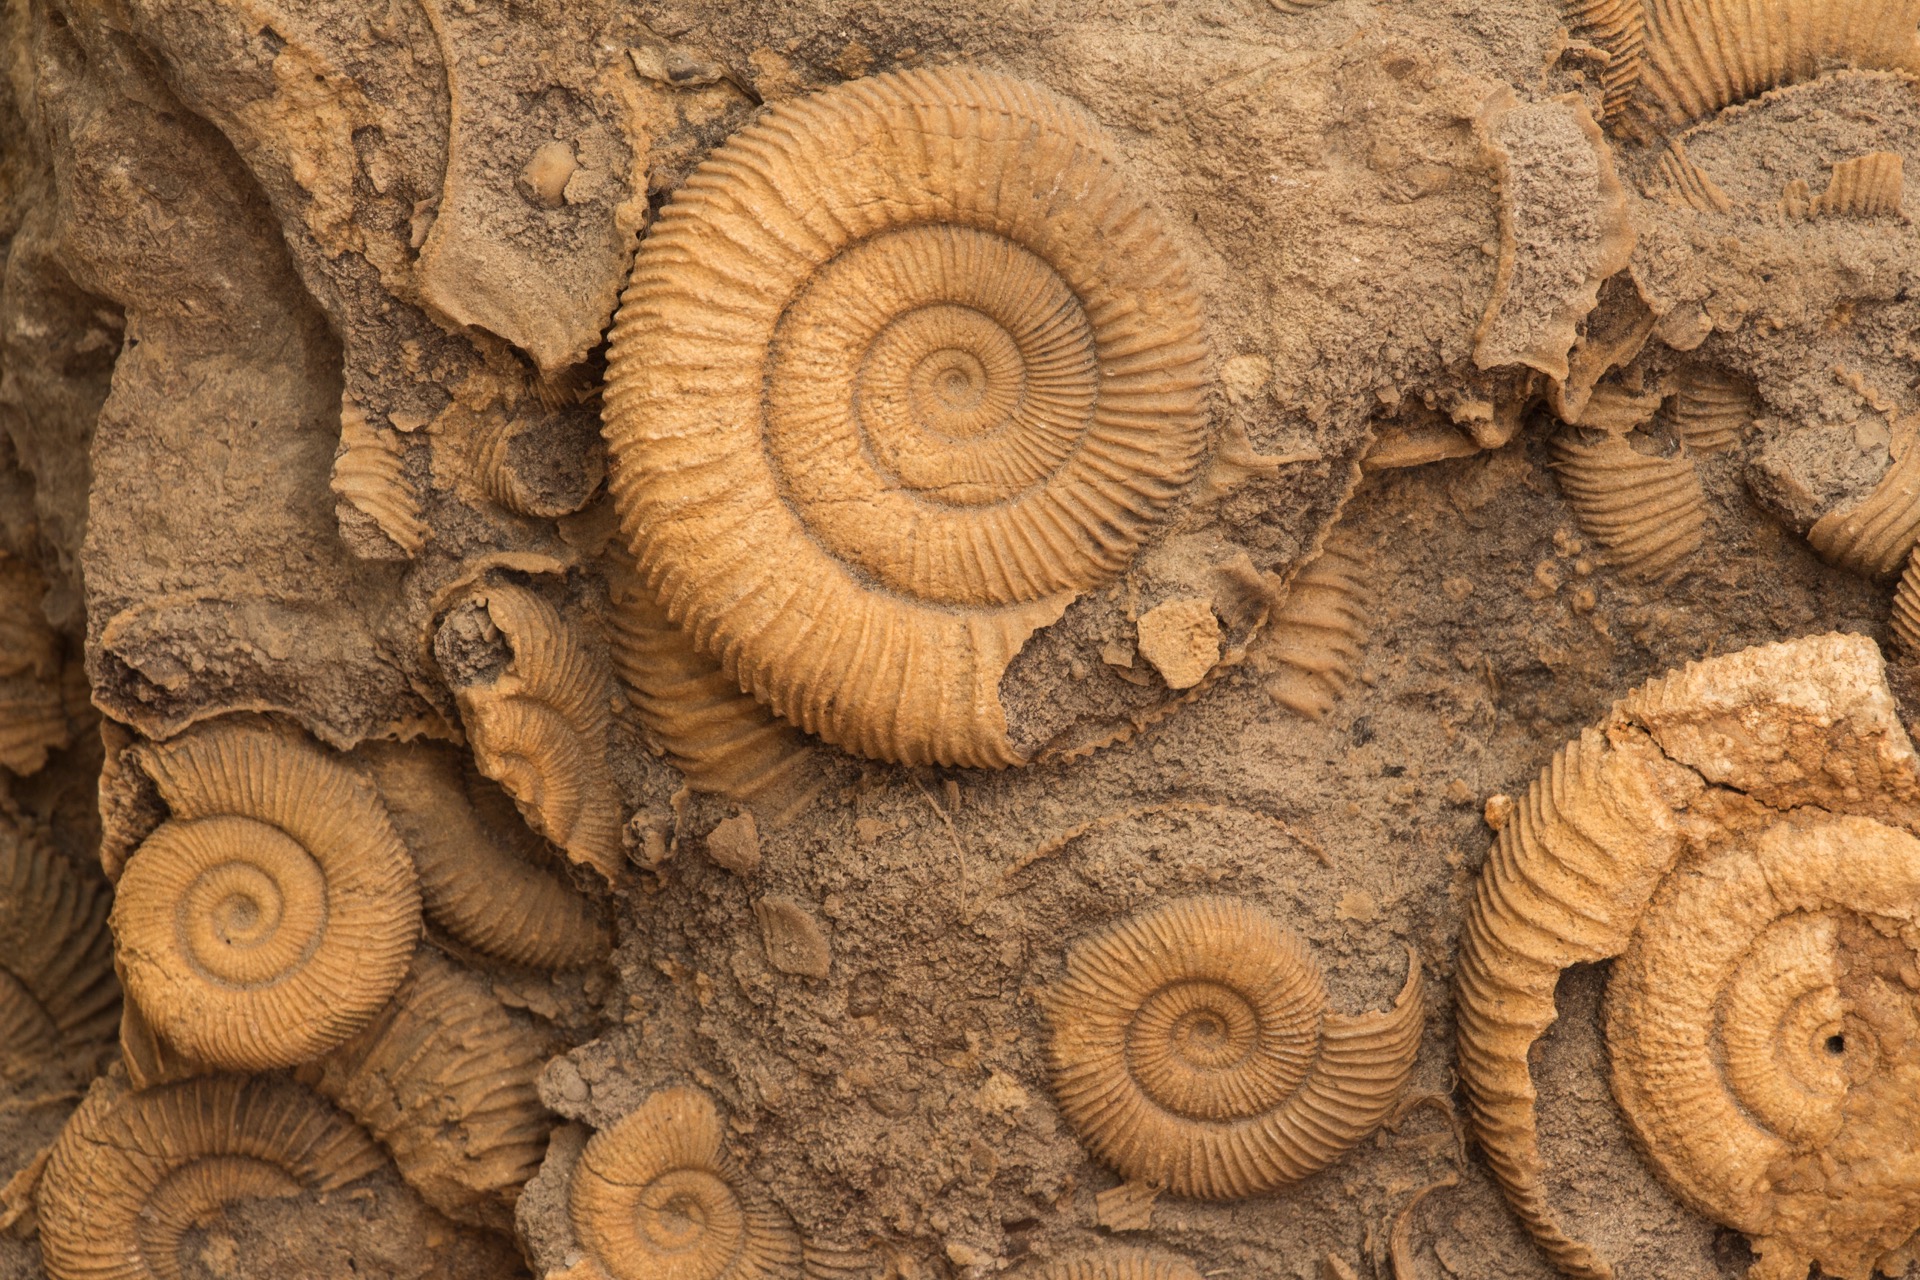 Selon les espèces, les ammonites présentaient des tailles variables, de quelques millimètres à plusieurs mètres de diamètre. © Bas, Adobe Stock